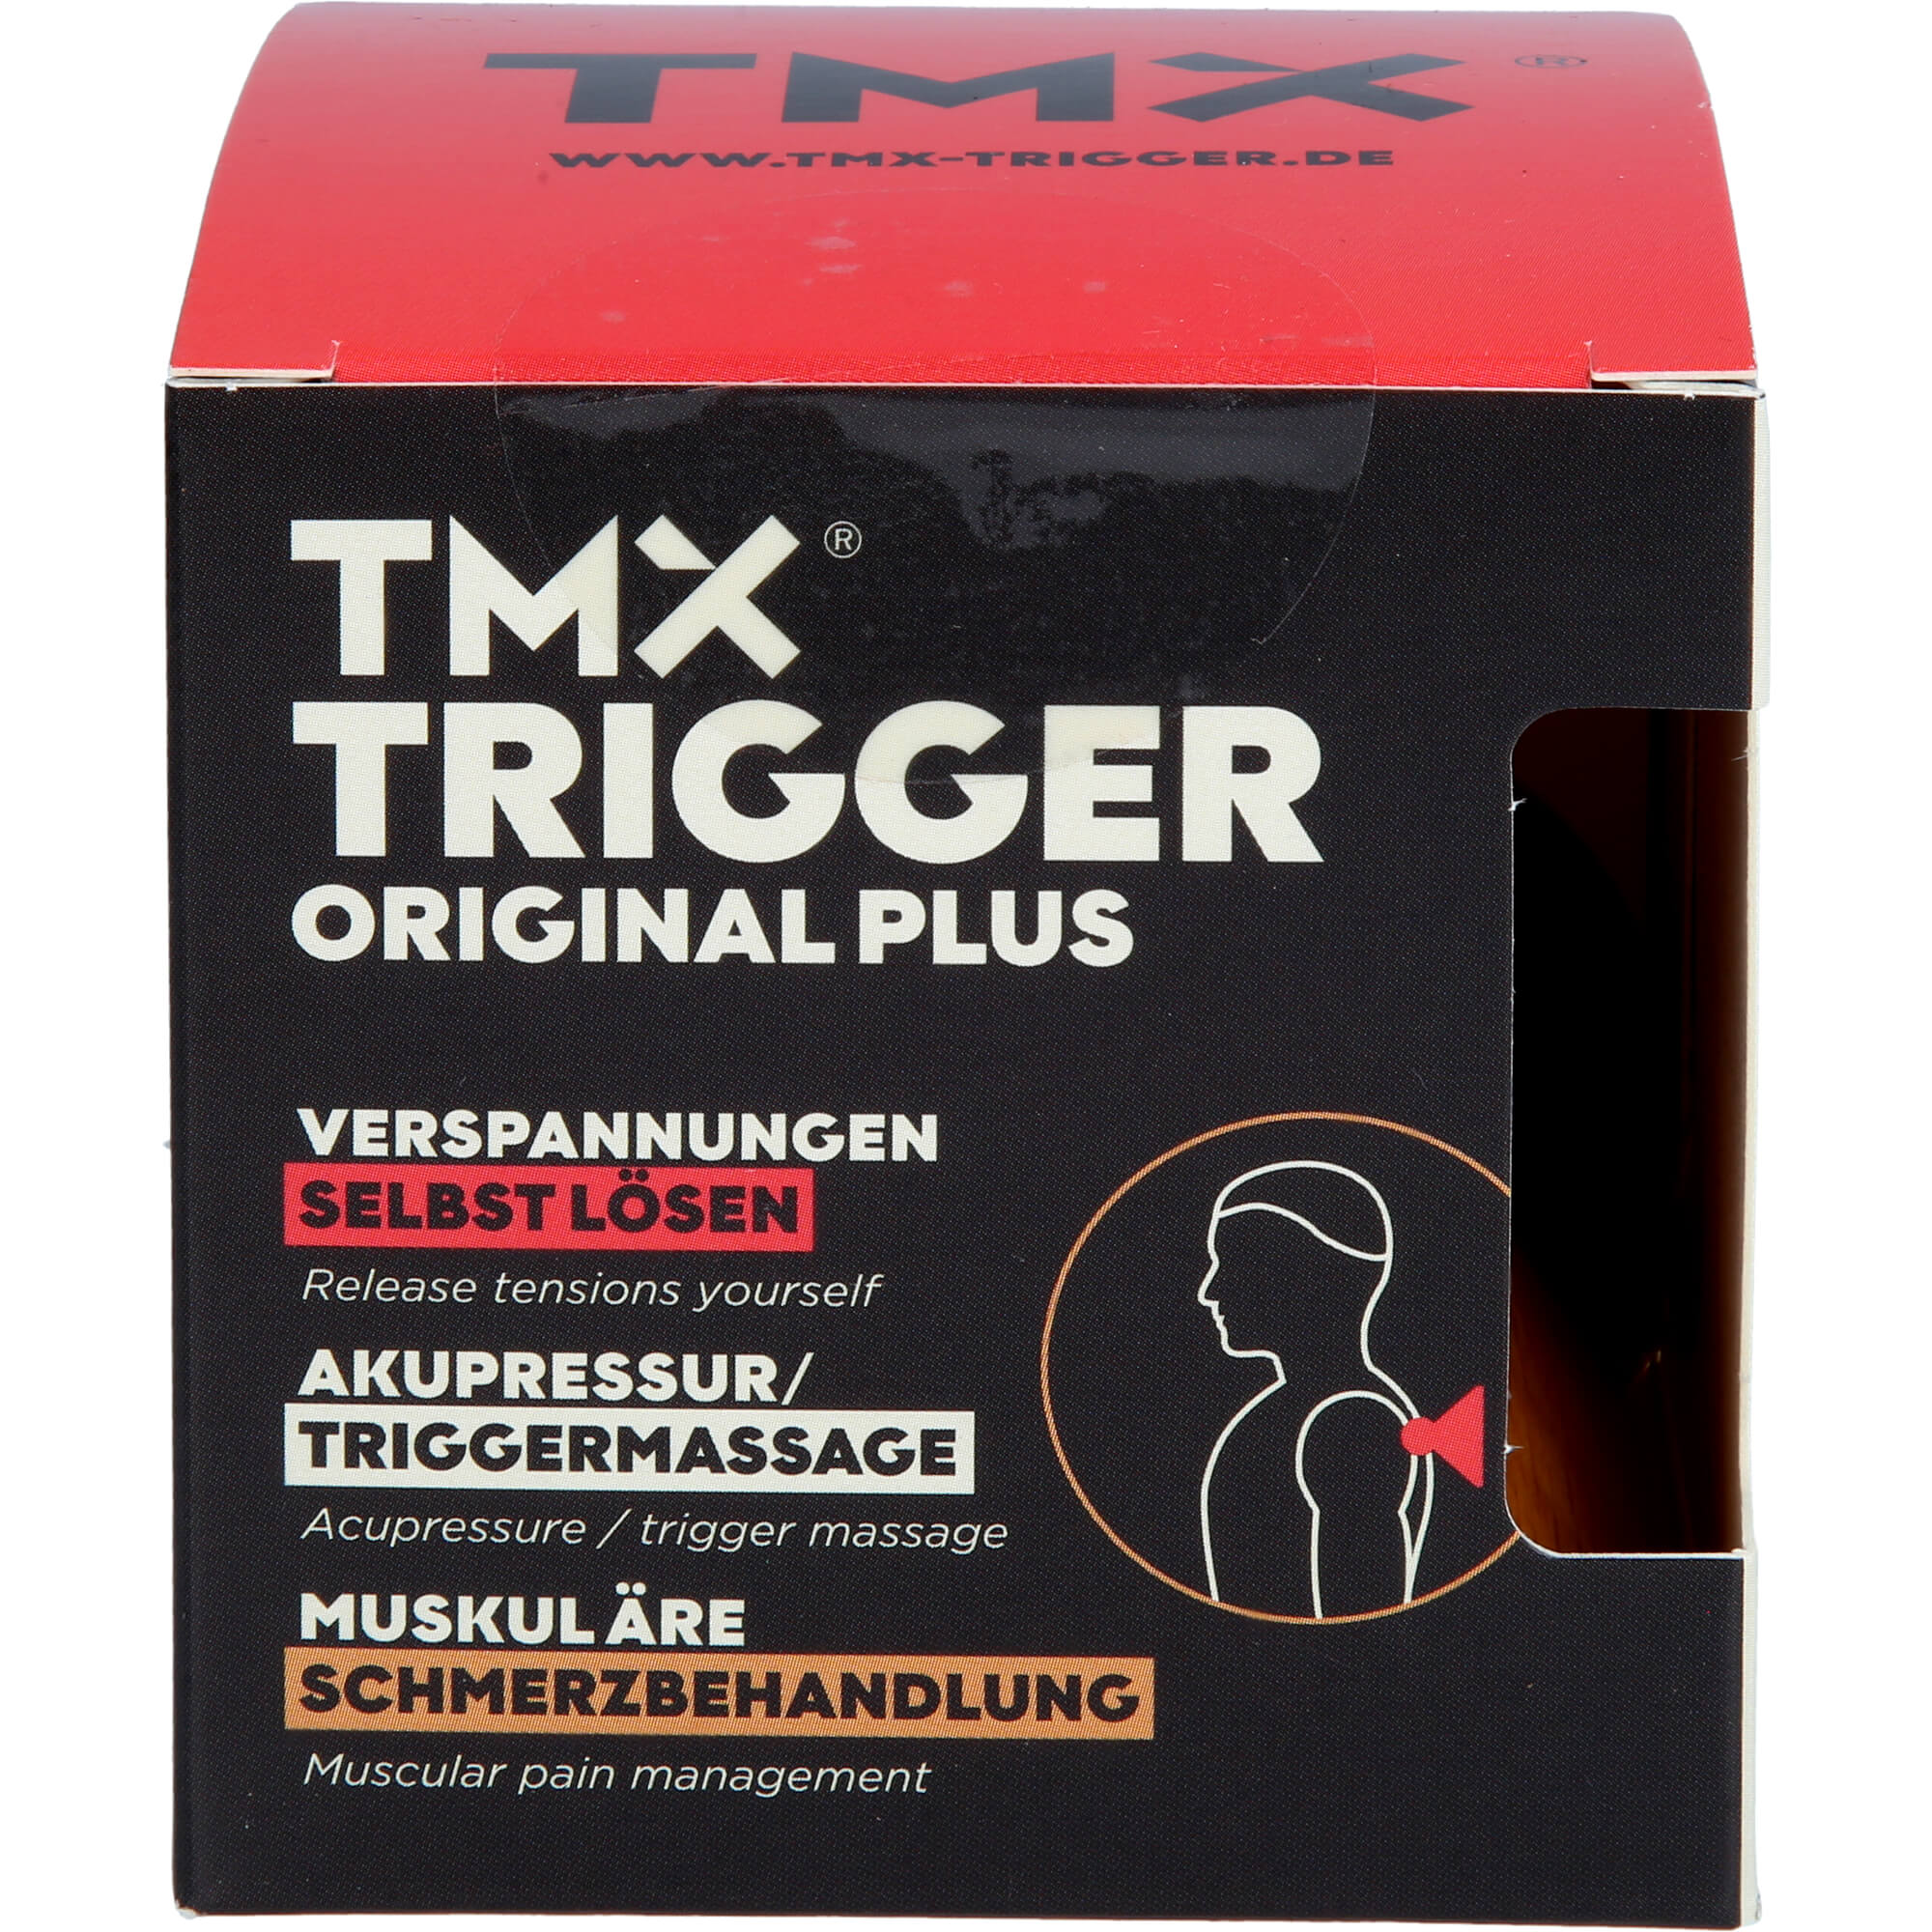 TMX Trigger Original Plus buche